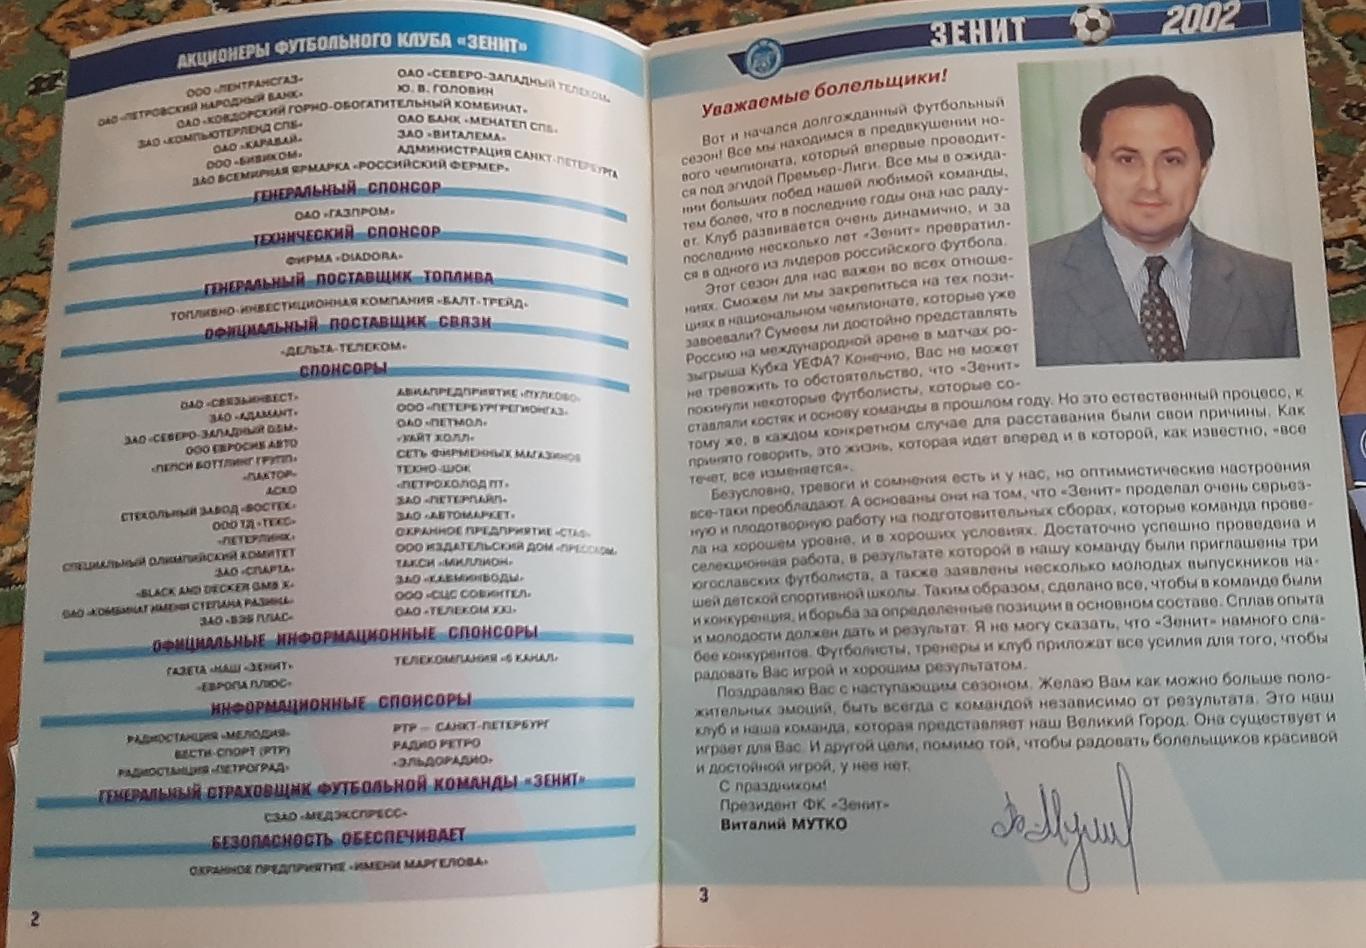 ФК Зенит-2002. Предсезонный буклет. 1